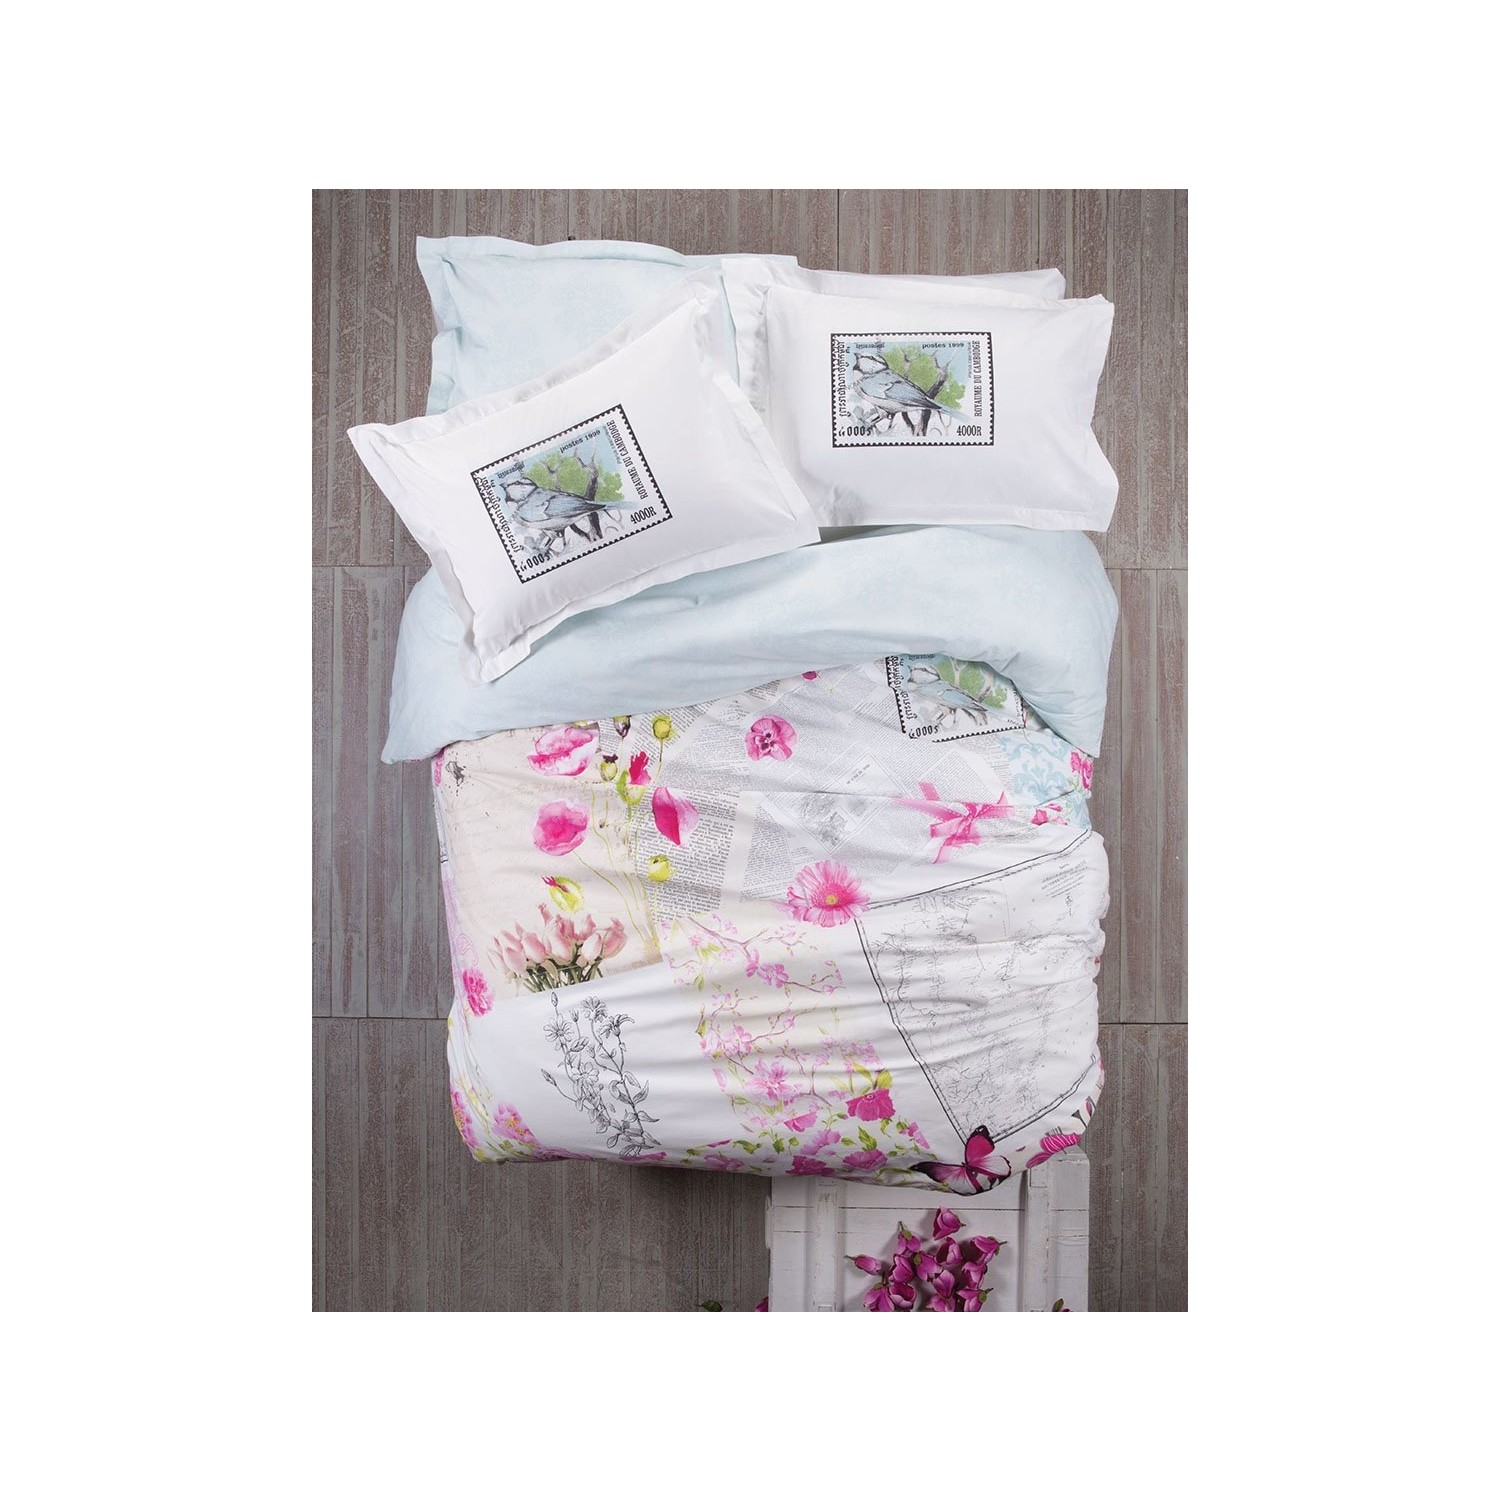 комплект постельного белья с вышивкой karaca home Комплект постельного белья Karaca Home Misty Pano Ranforce